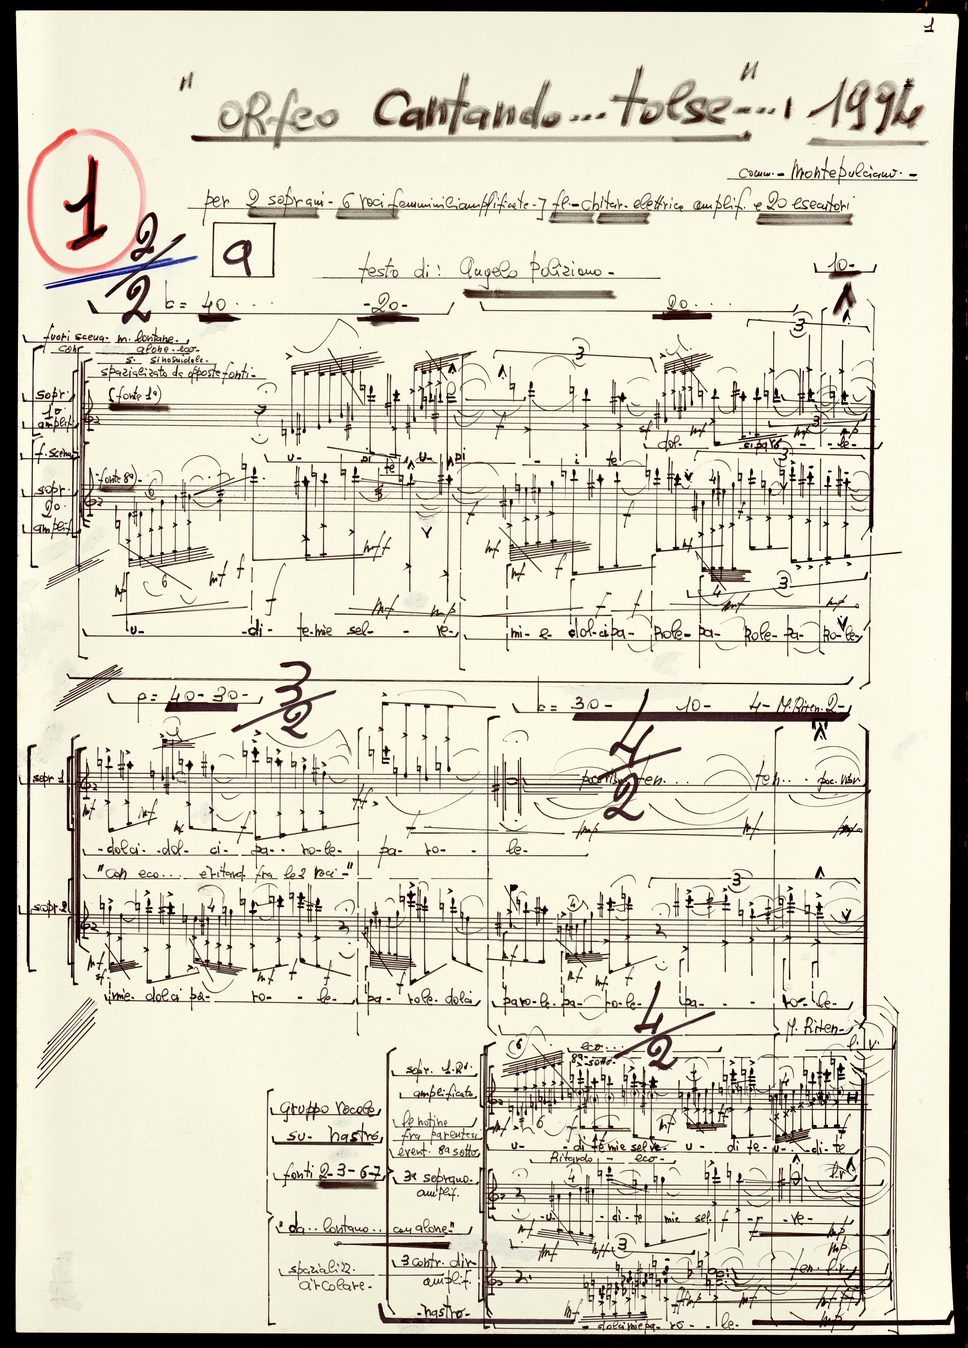 Orfeo cantando…tolse… | Archivio Storico Ricordi | Collezione Digitale